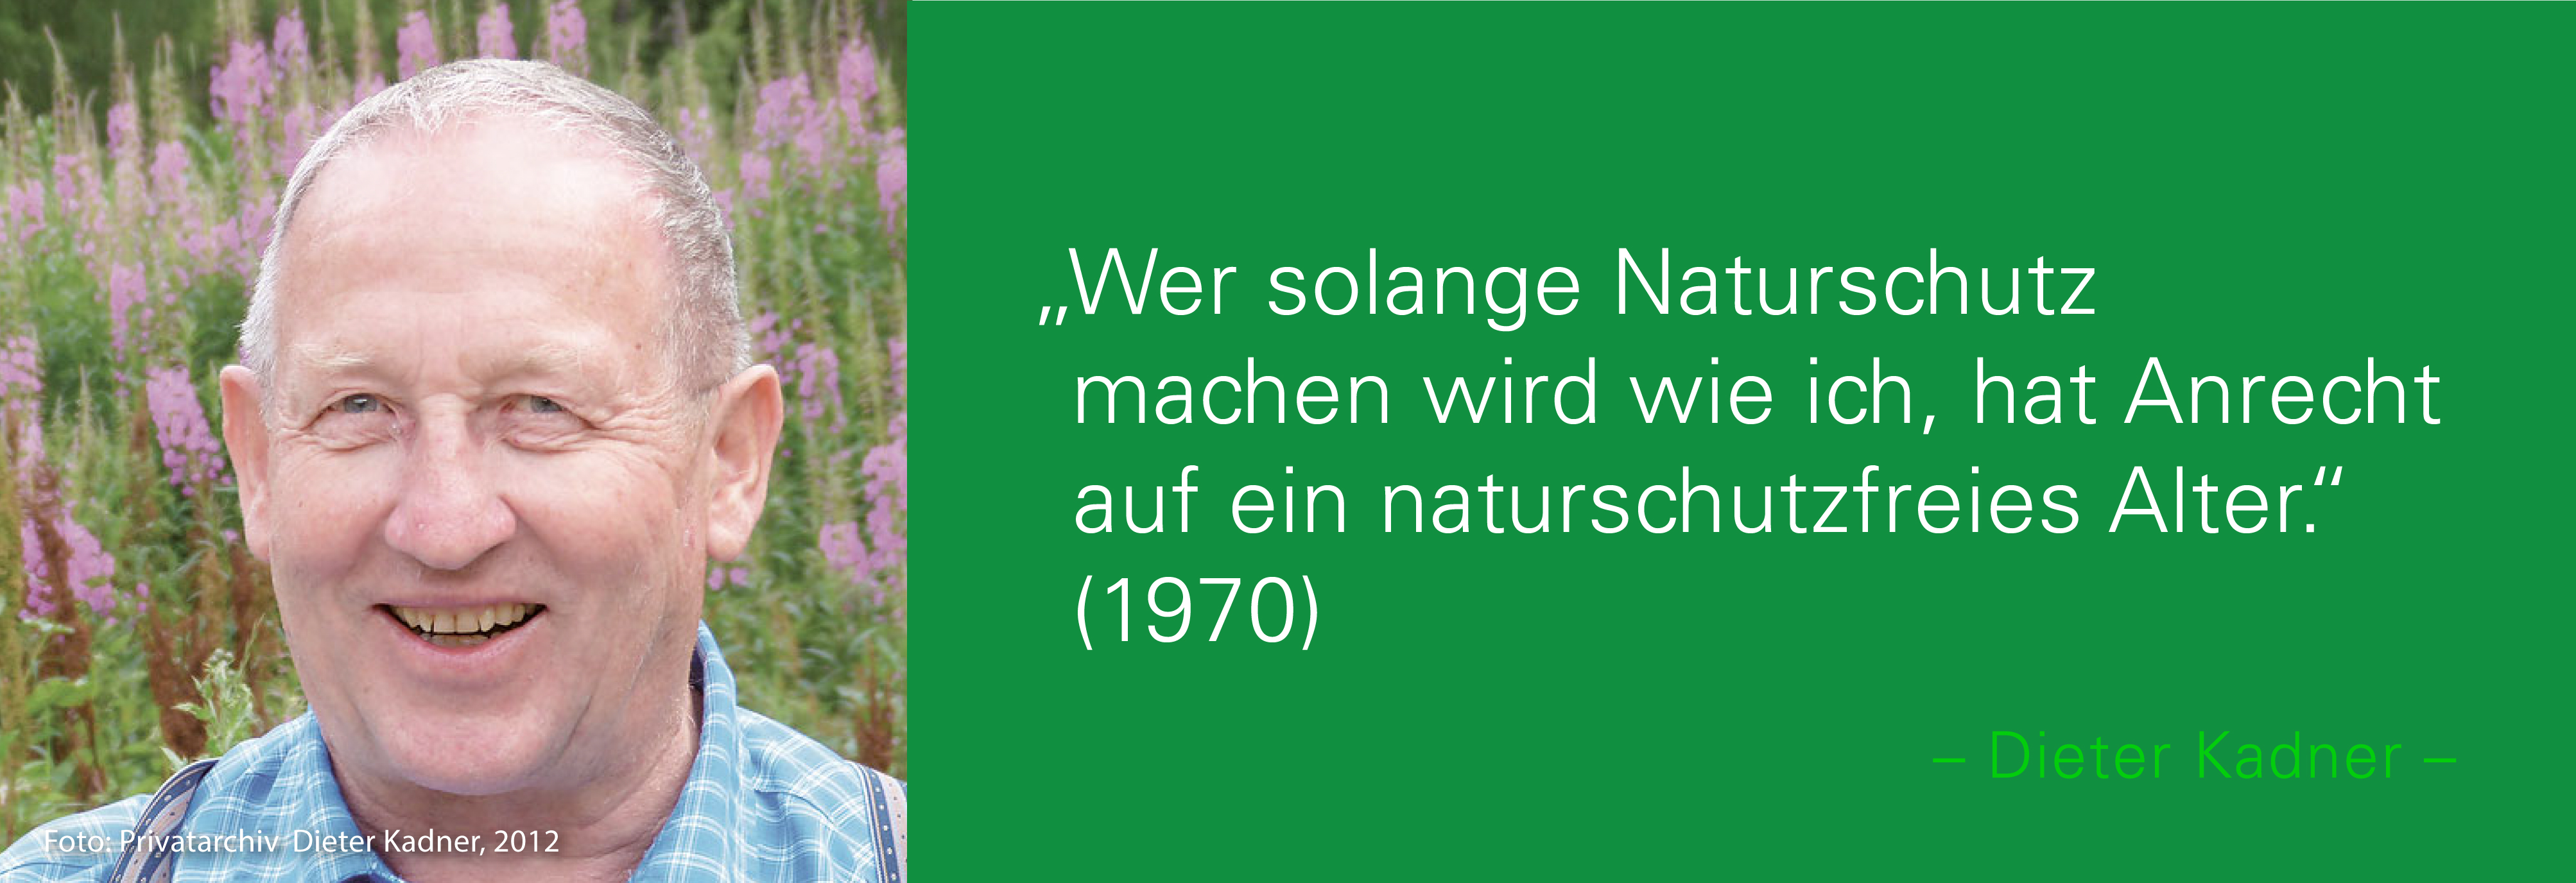 Portraitfoto von Dieter Kadner mit seinem Zitat: Wer solange Naturschutz machen wird wie ich, hat Anrecht auf ein naturschutzfreies Alter. (1970) 